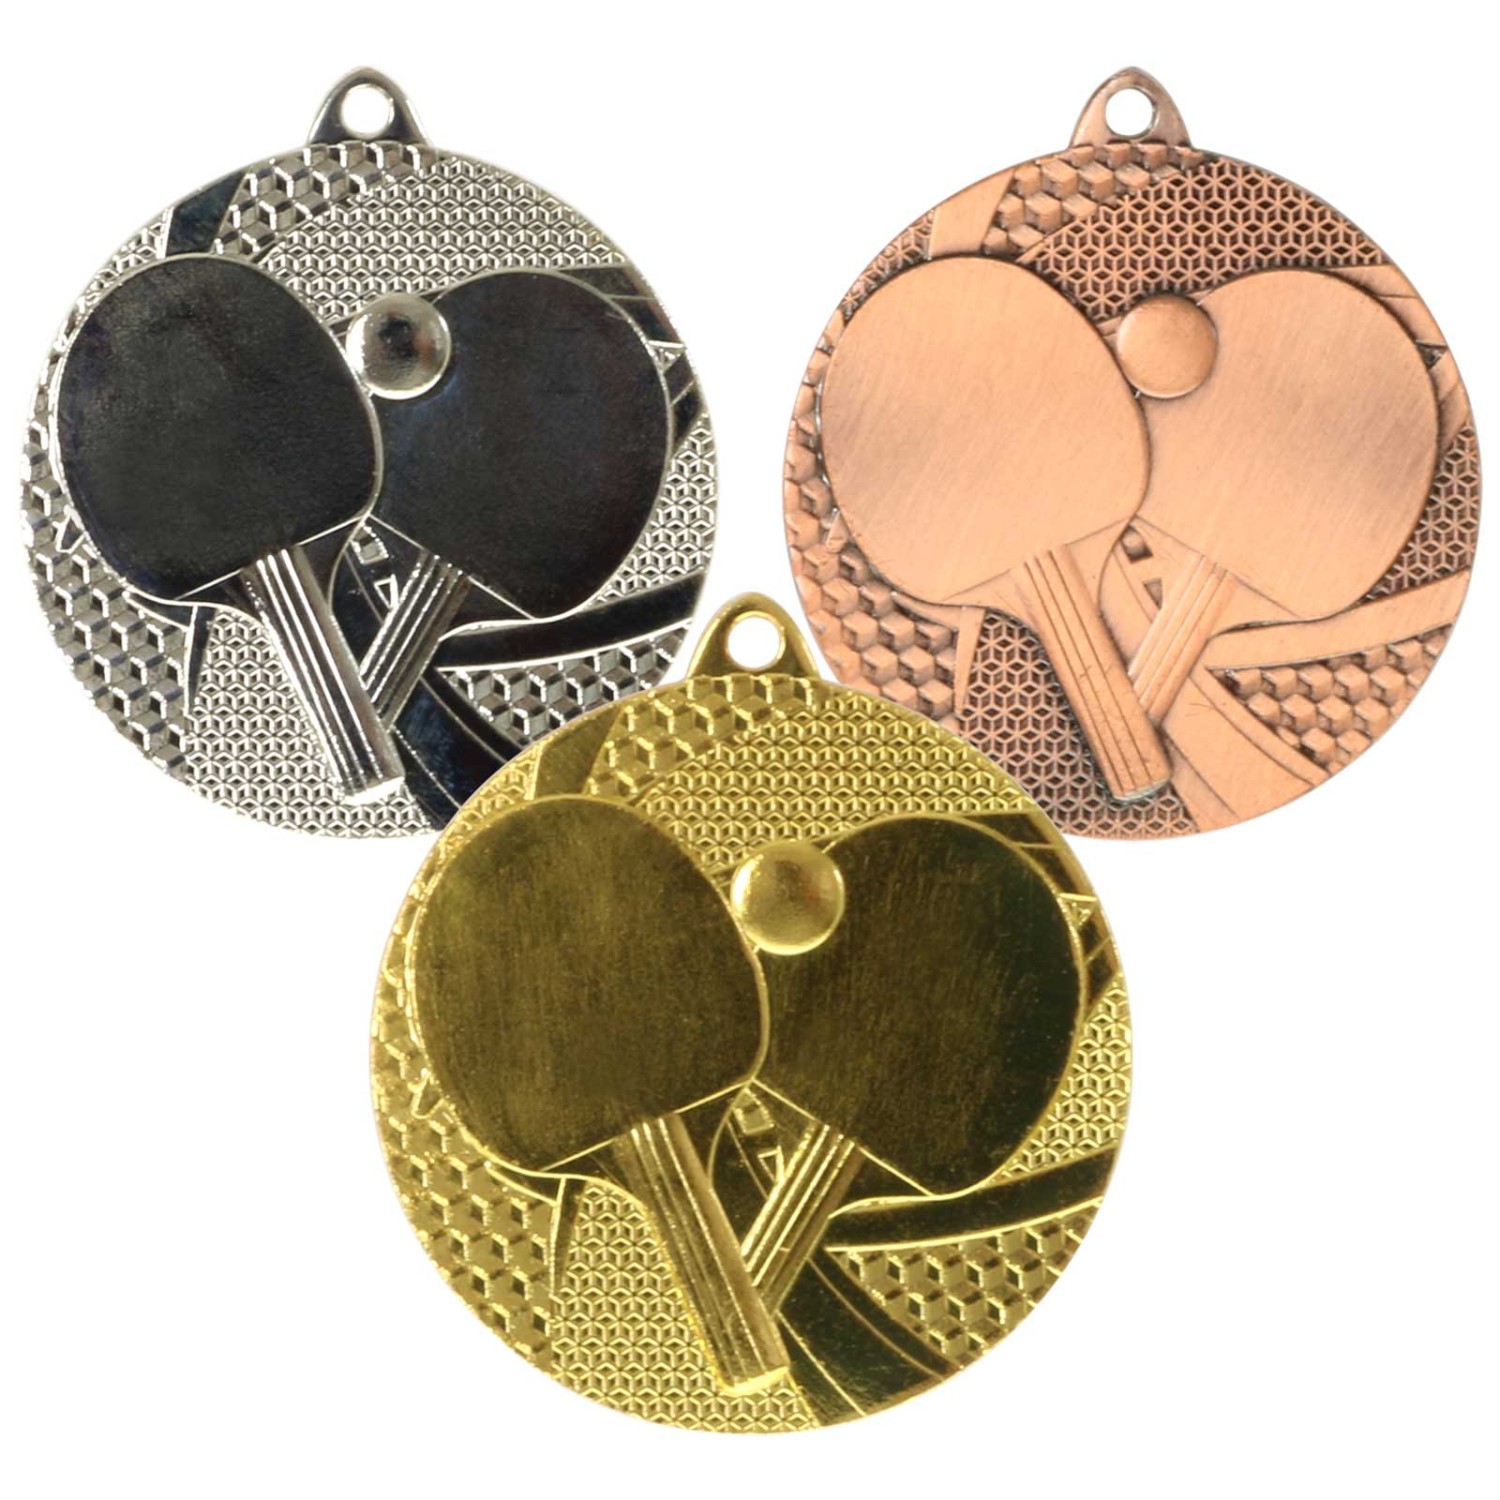 0. Foto Medaille Tischtennis Tischtennis-Medaillen rund gold silber bronze (Sorte: Set je 1x gold / silber / bronze)